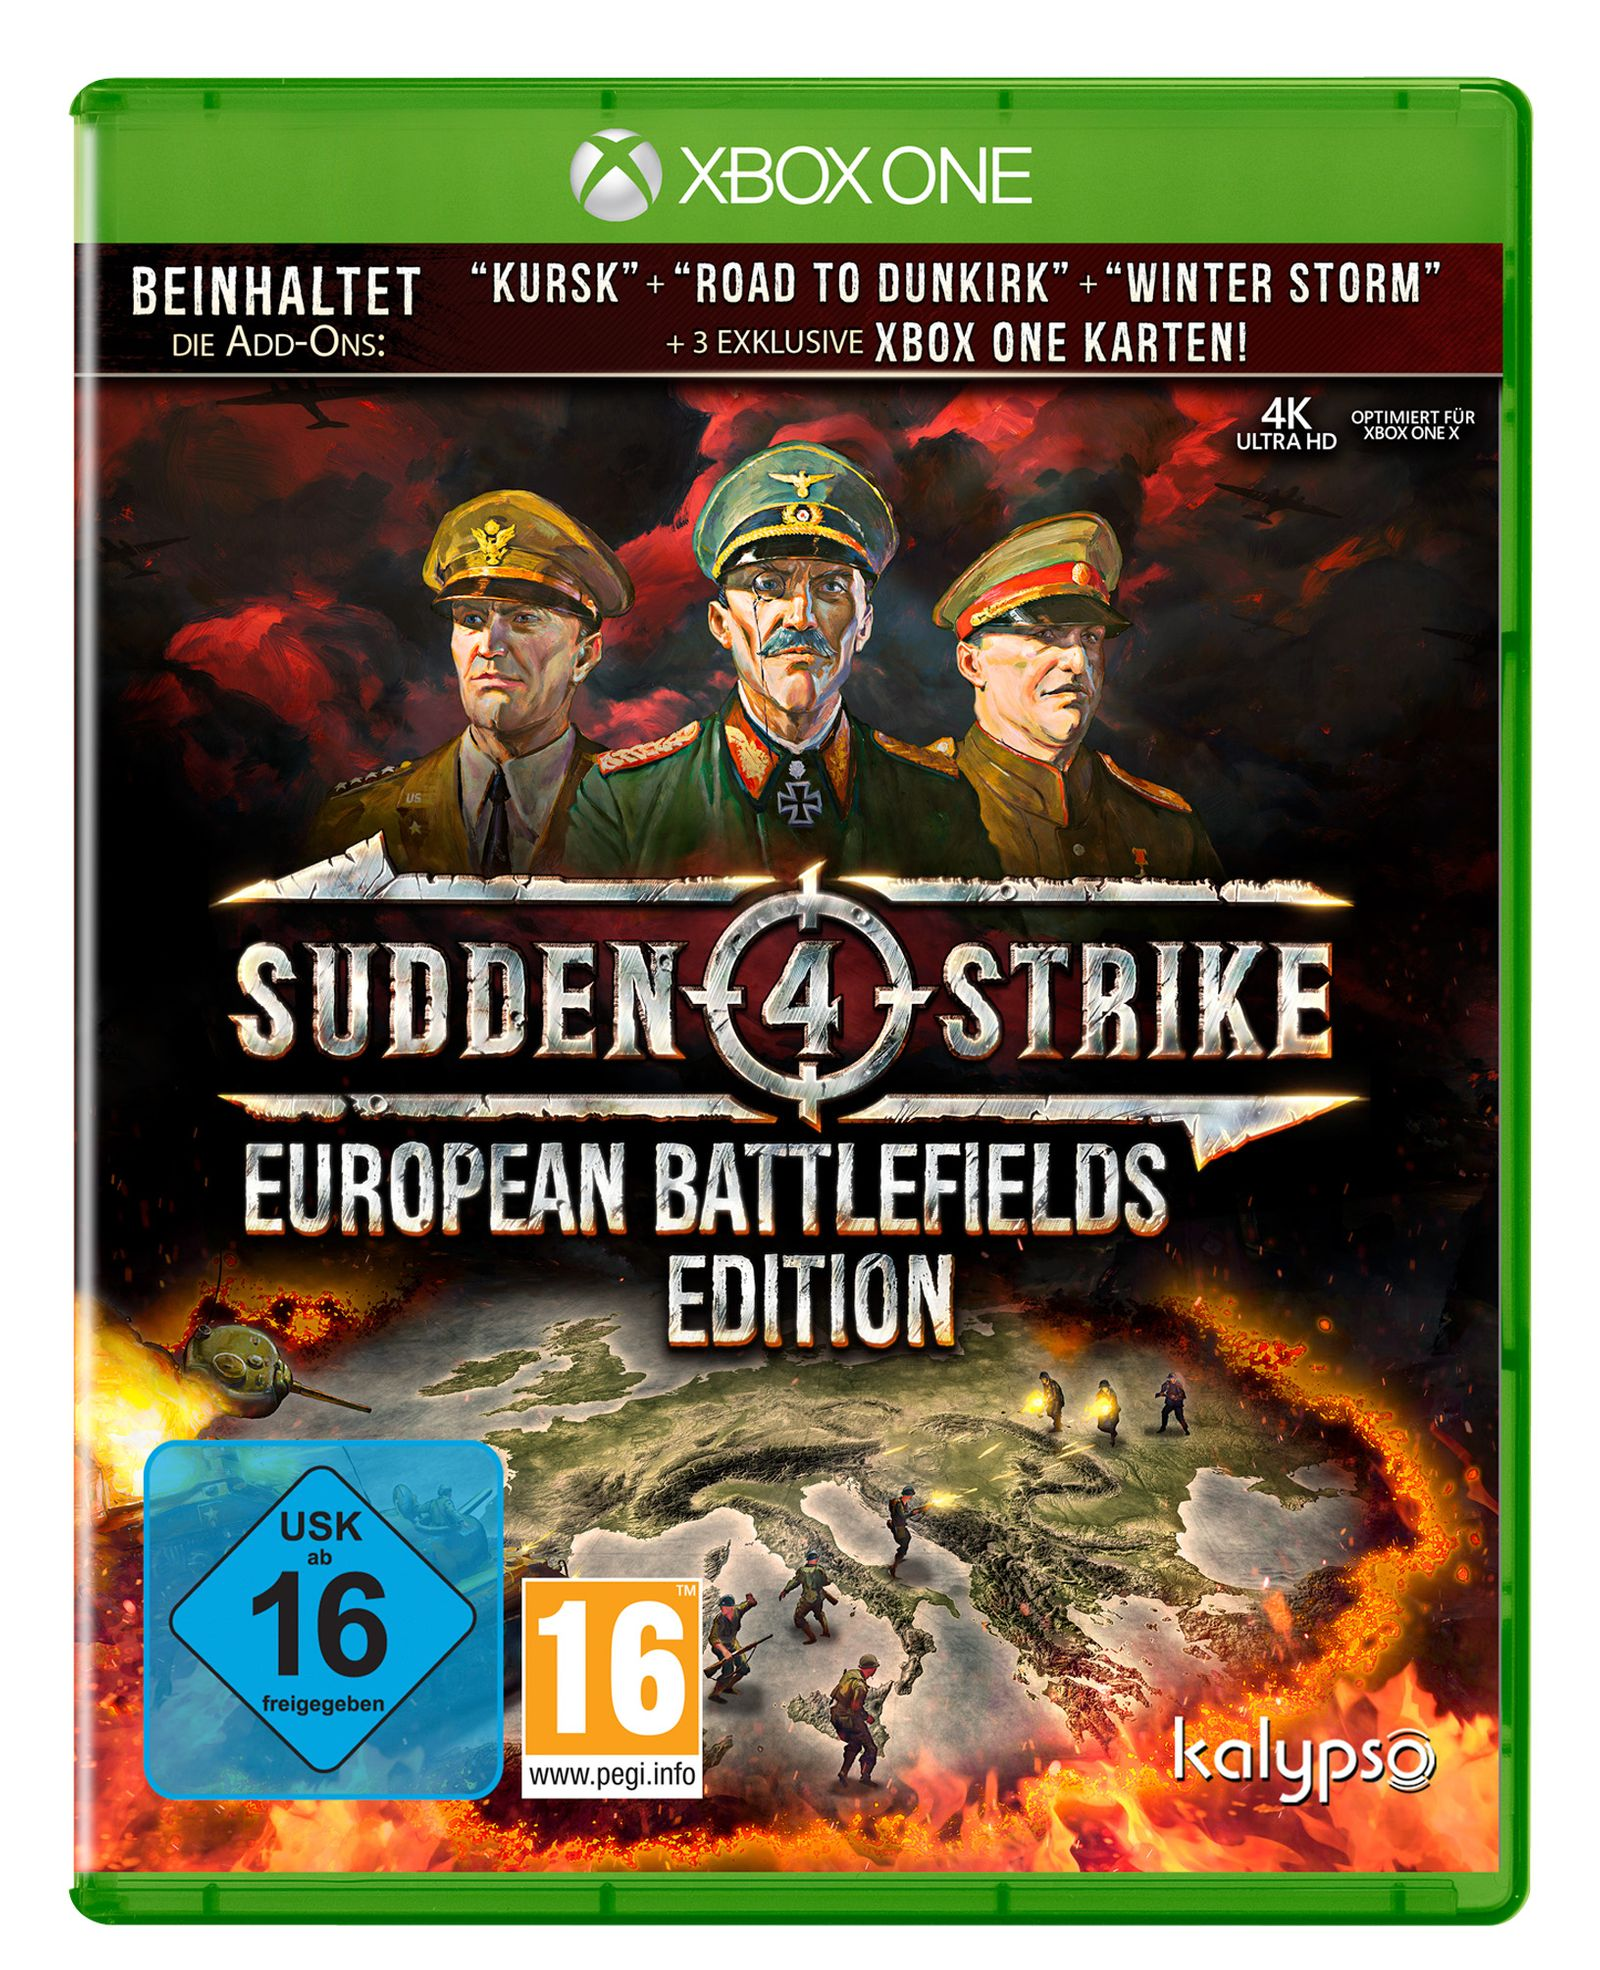 [Xbox Strike One] Battlefields 4 Edition European - Sudden